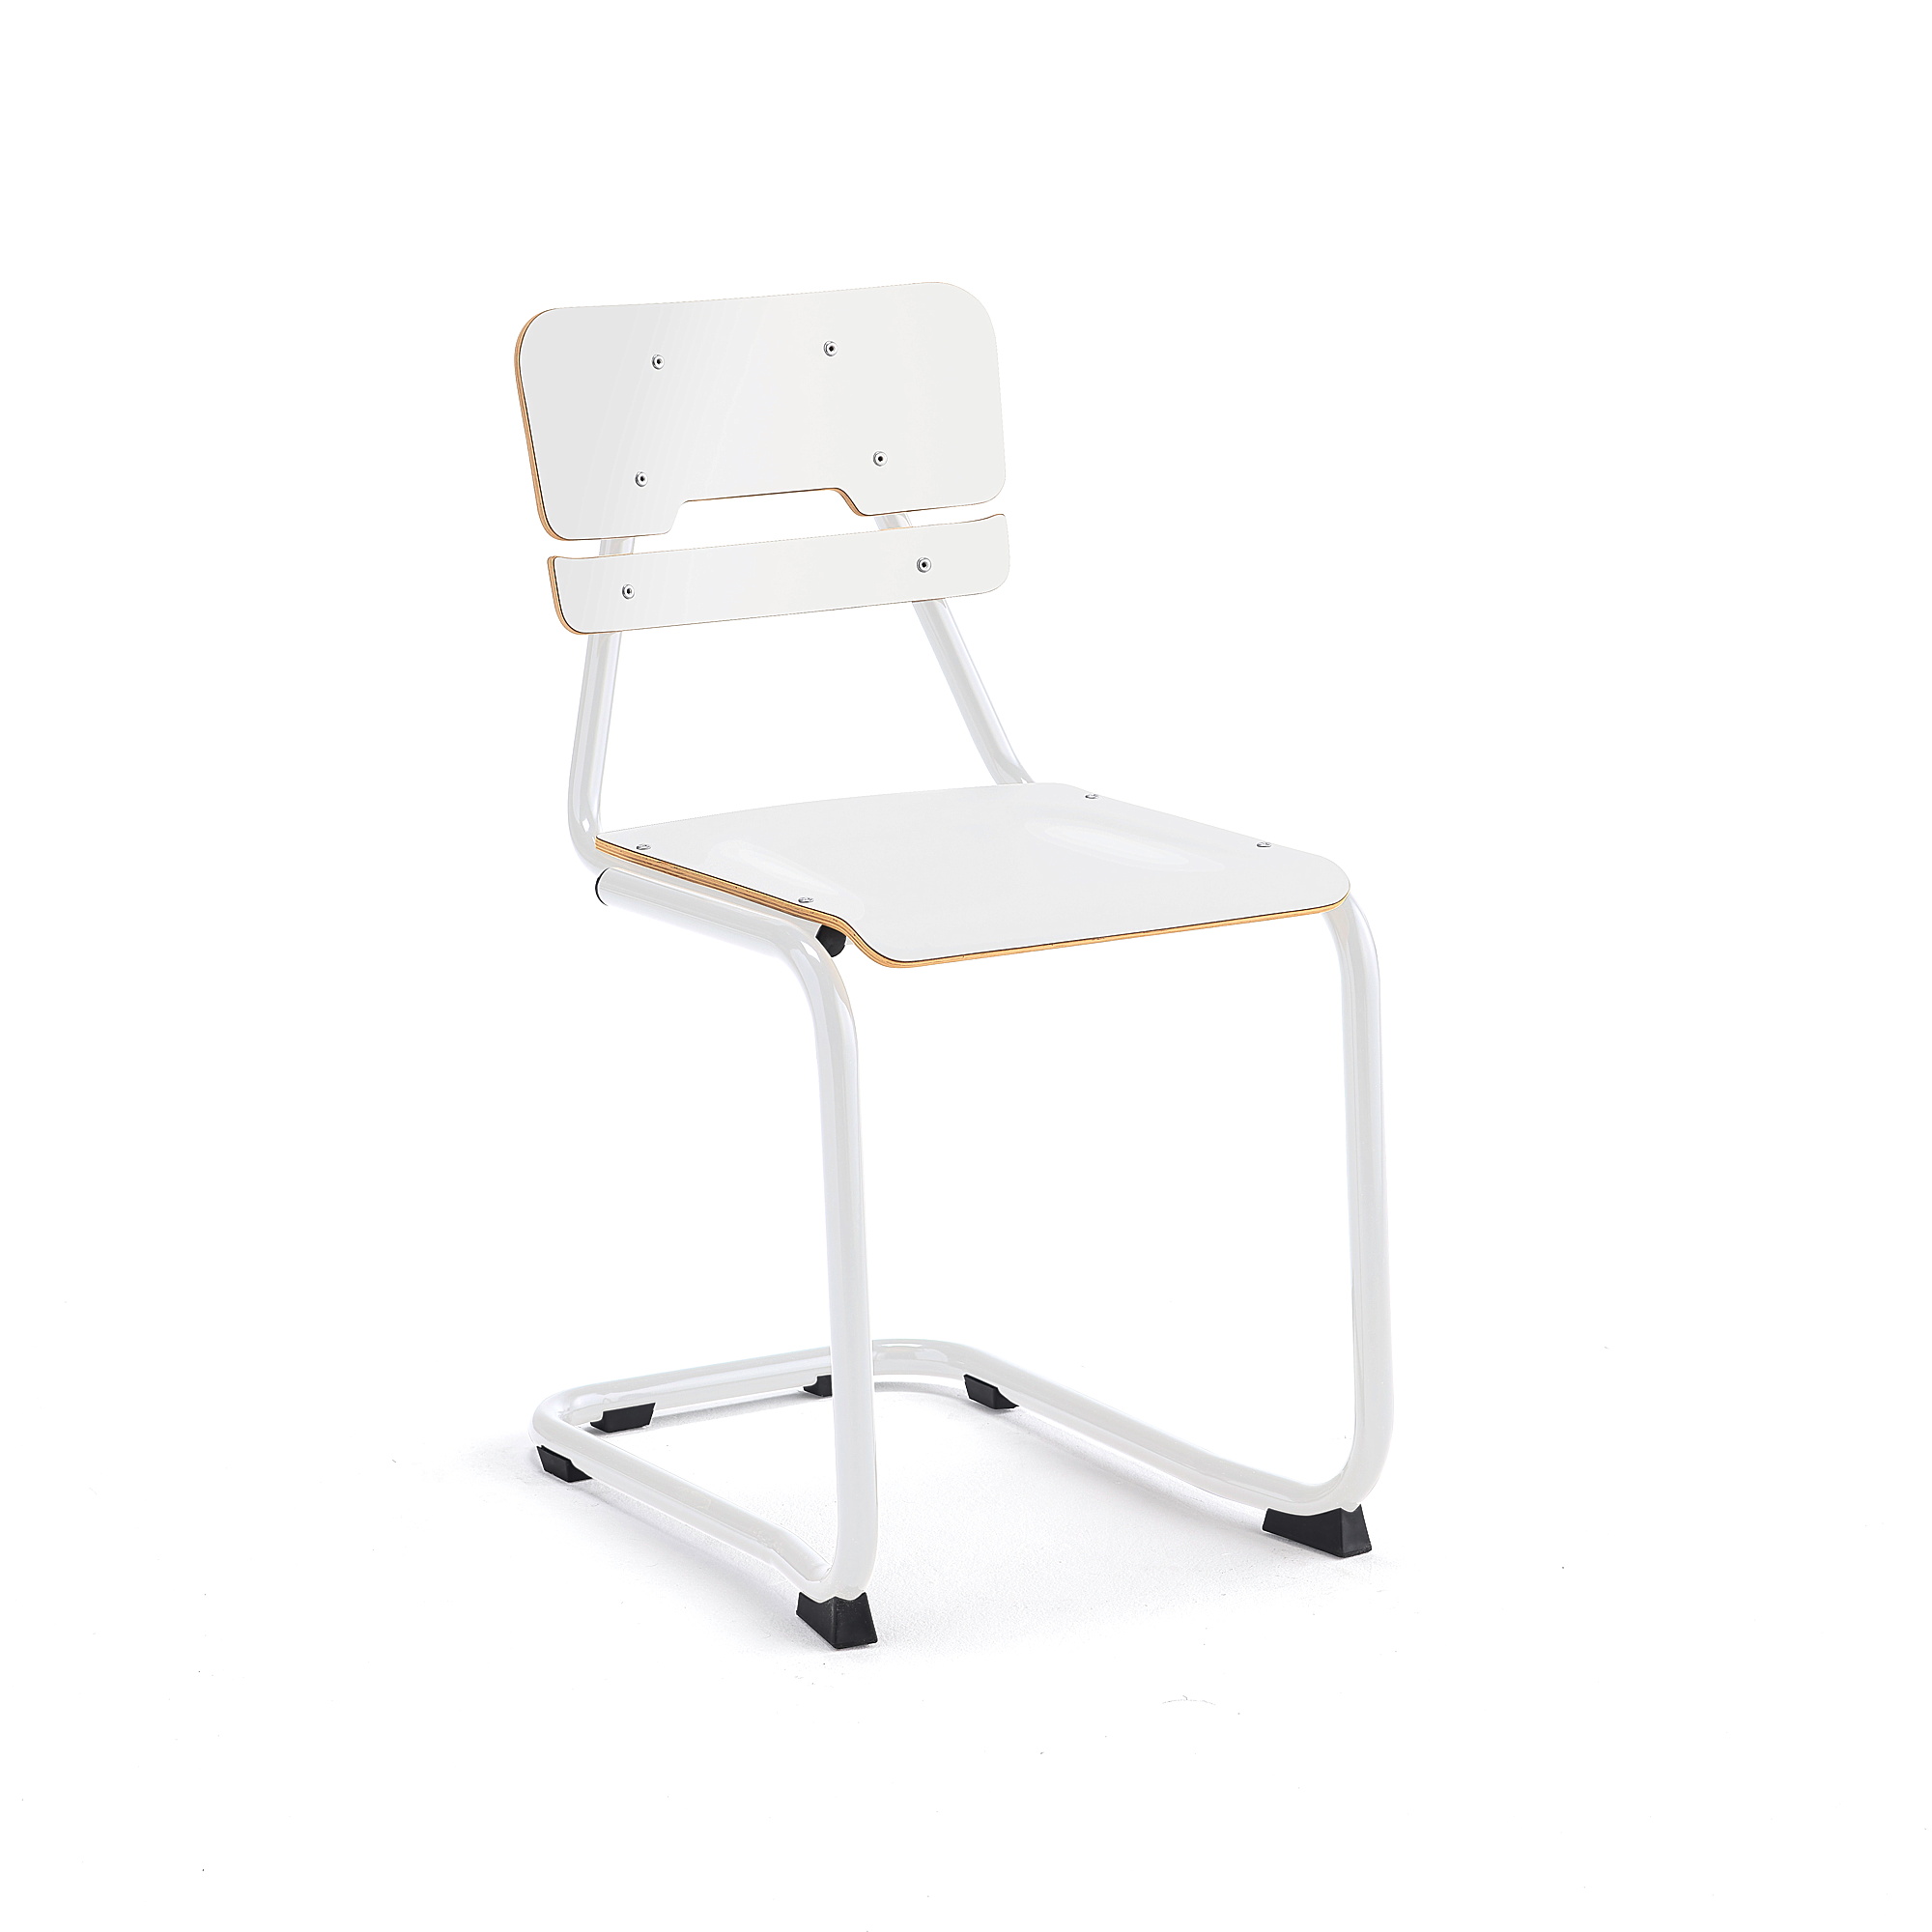 Školní židle LEGERE I, výška 450 mm, bílá, bílá